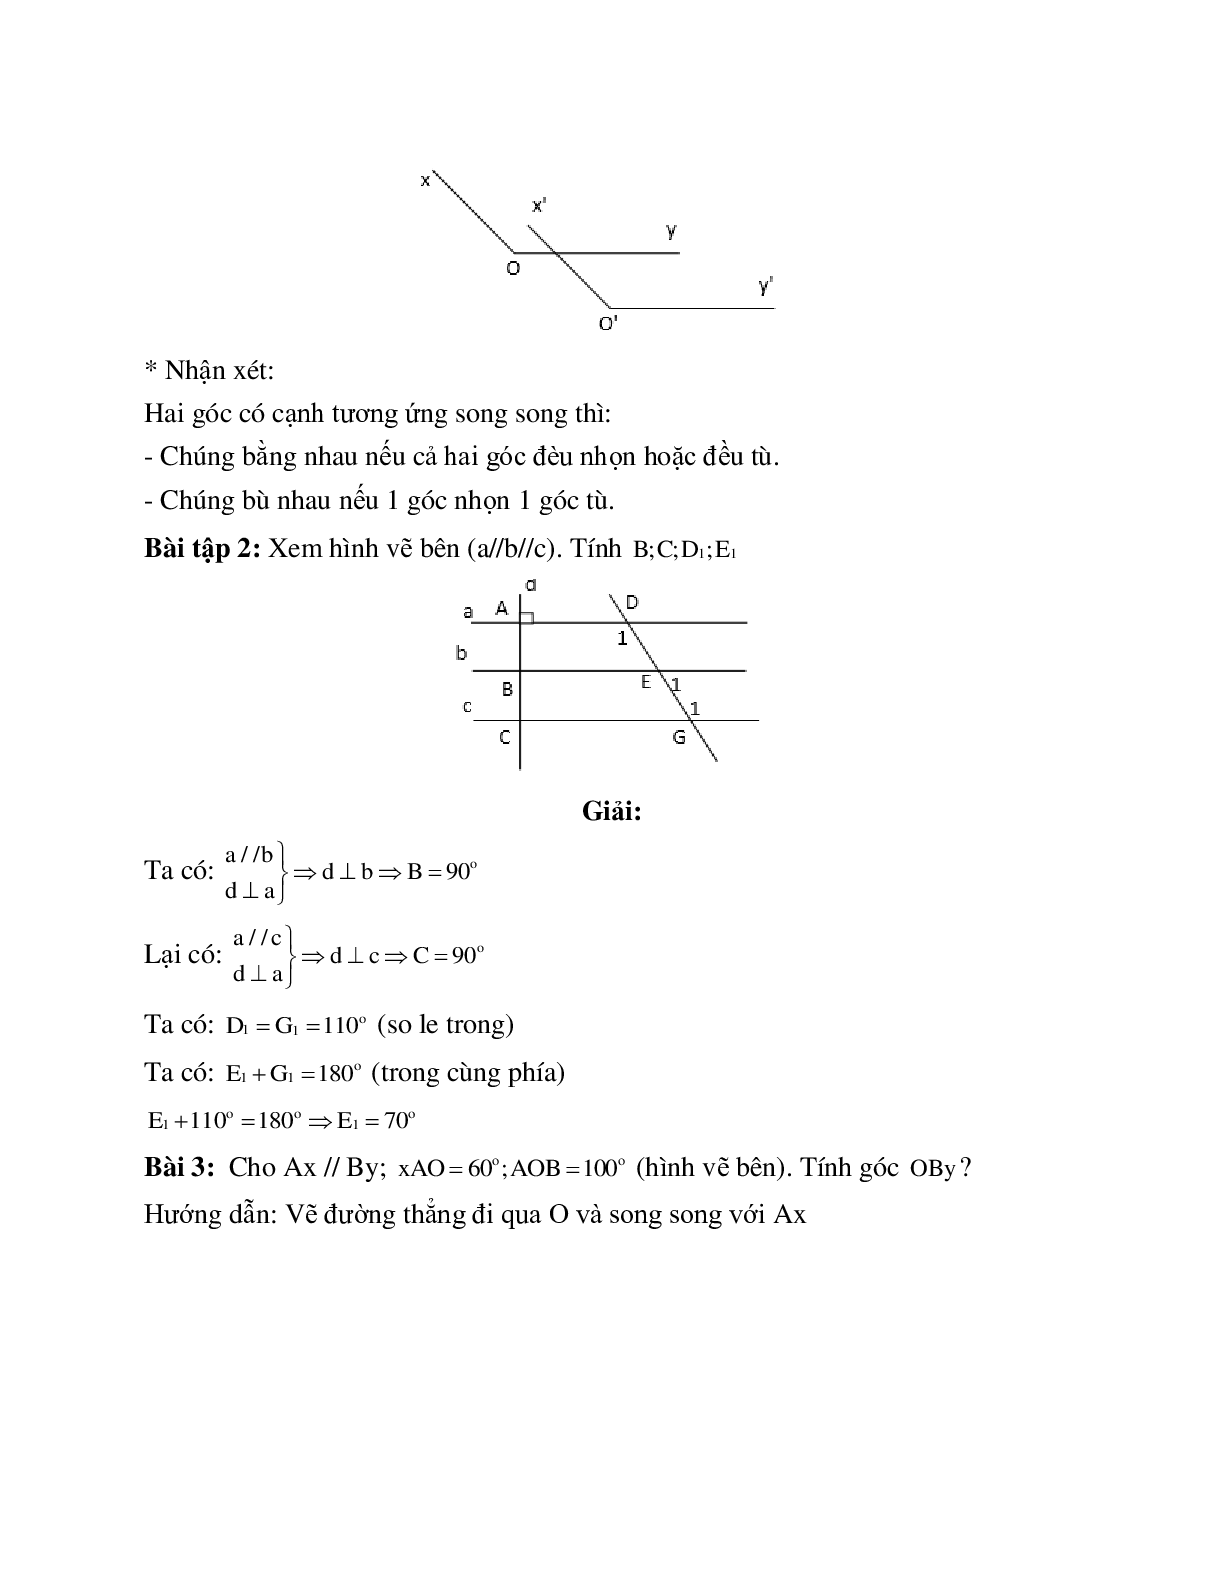 Hệ thống bài tập về Tiên đề Ơ-clit - Từ vuông góc đến song song có lời giải (trang 2)